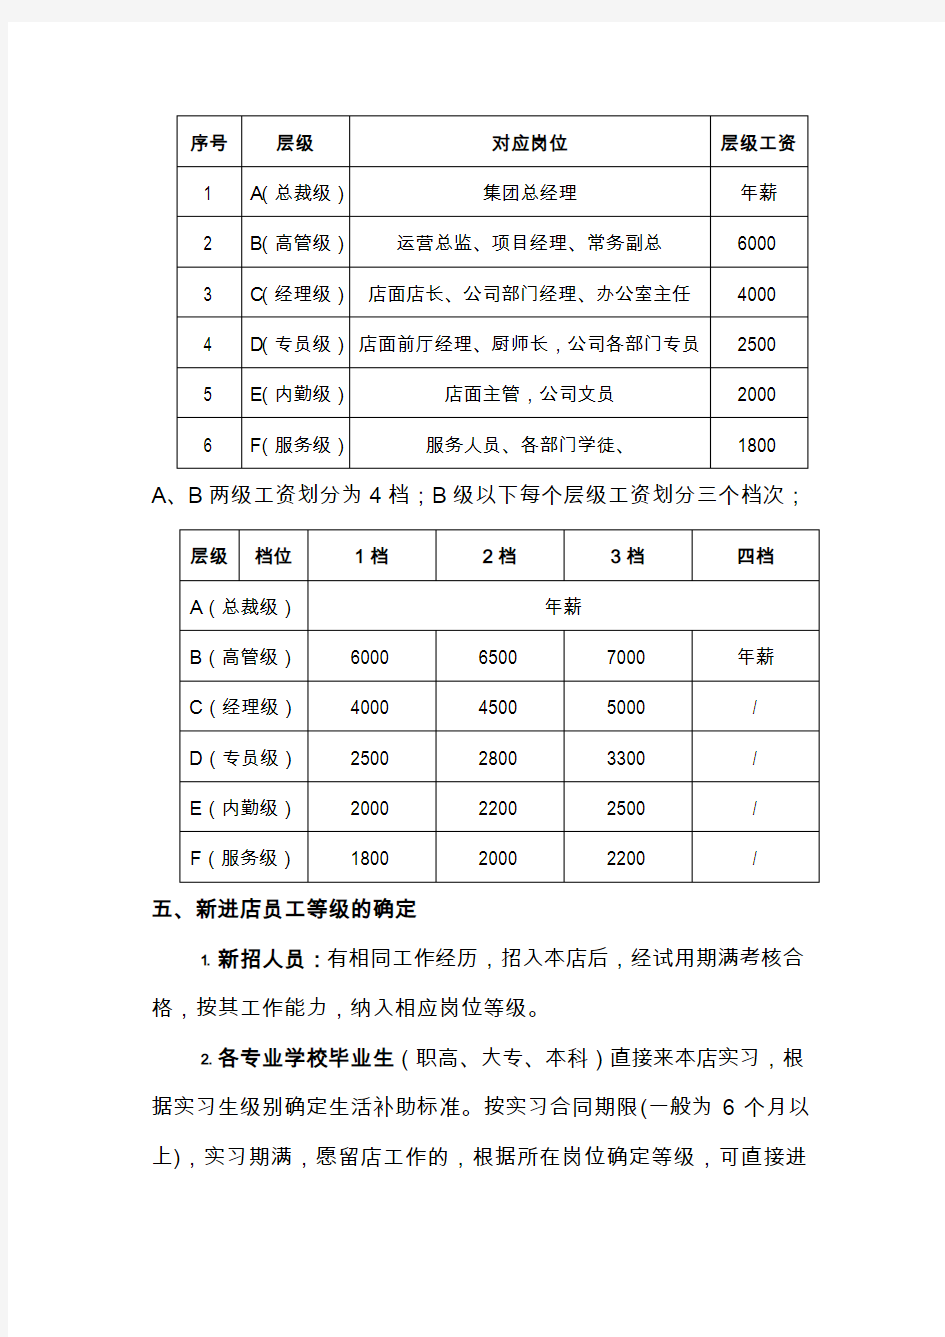 深圳餐饮公司薪酬制度(2015年)